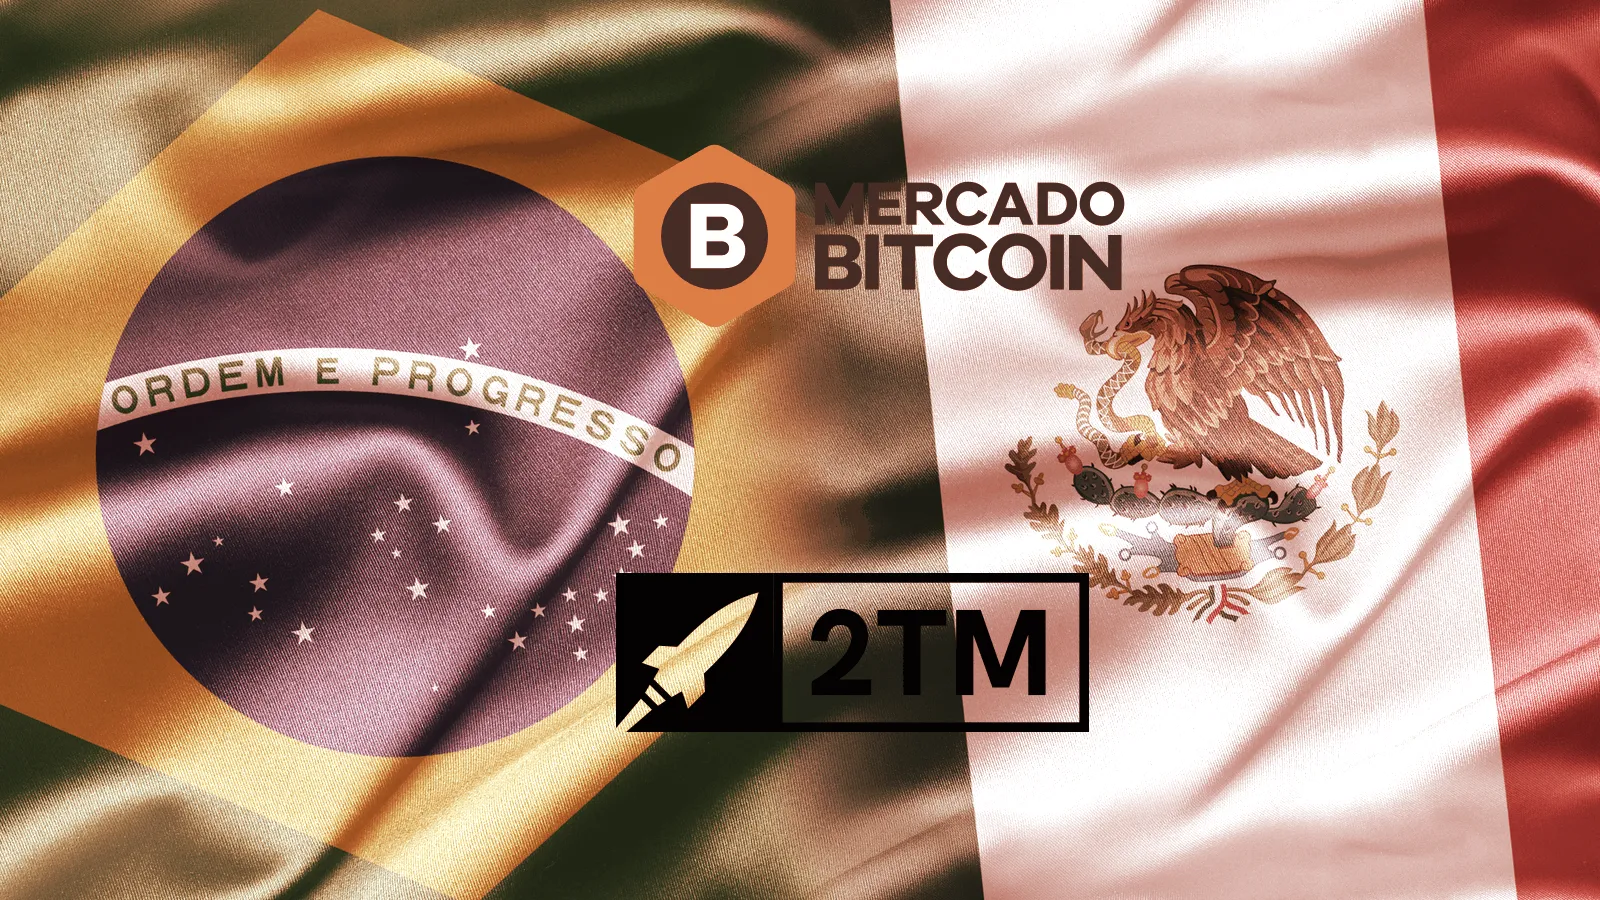 Grupo 2TM dueño de MercadoBitcoin se expande de Brasil a México. Imagen: Decrypt